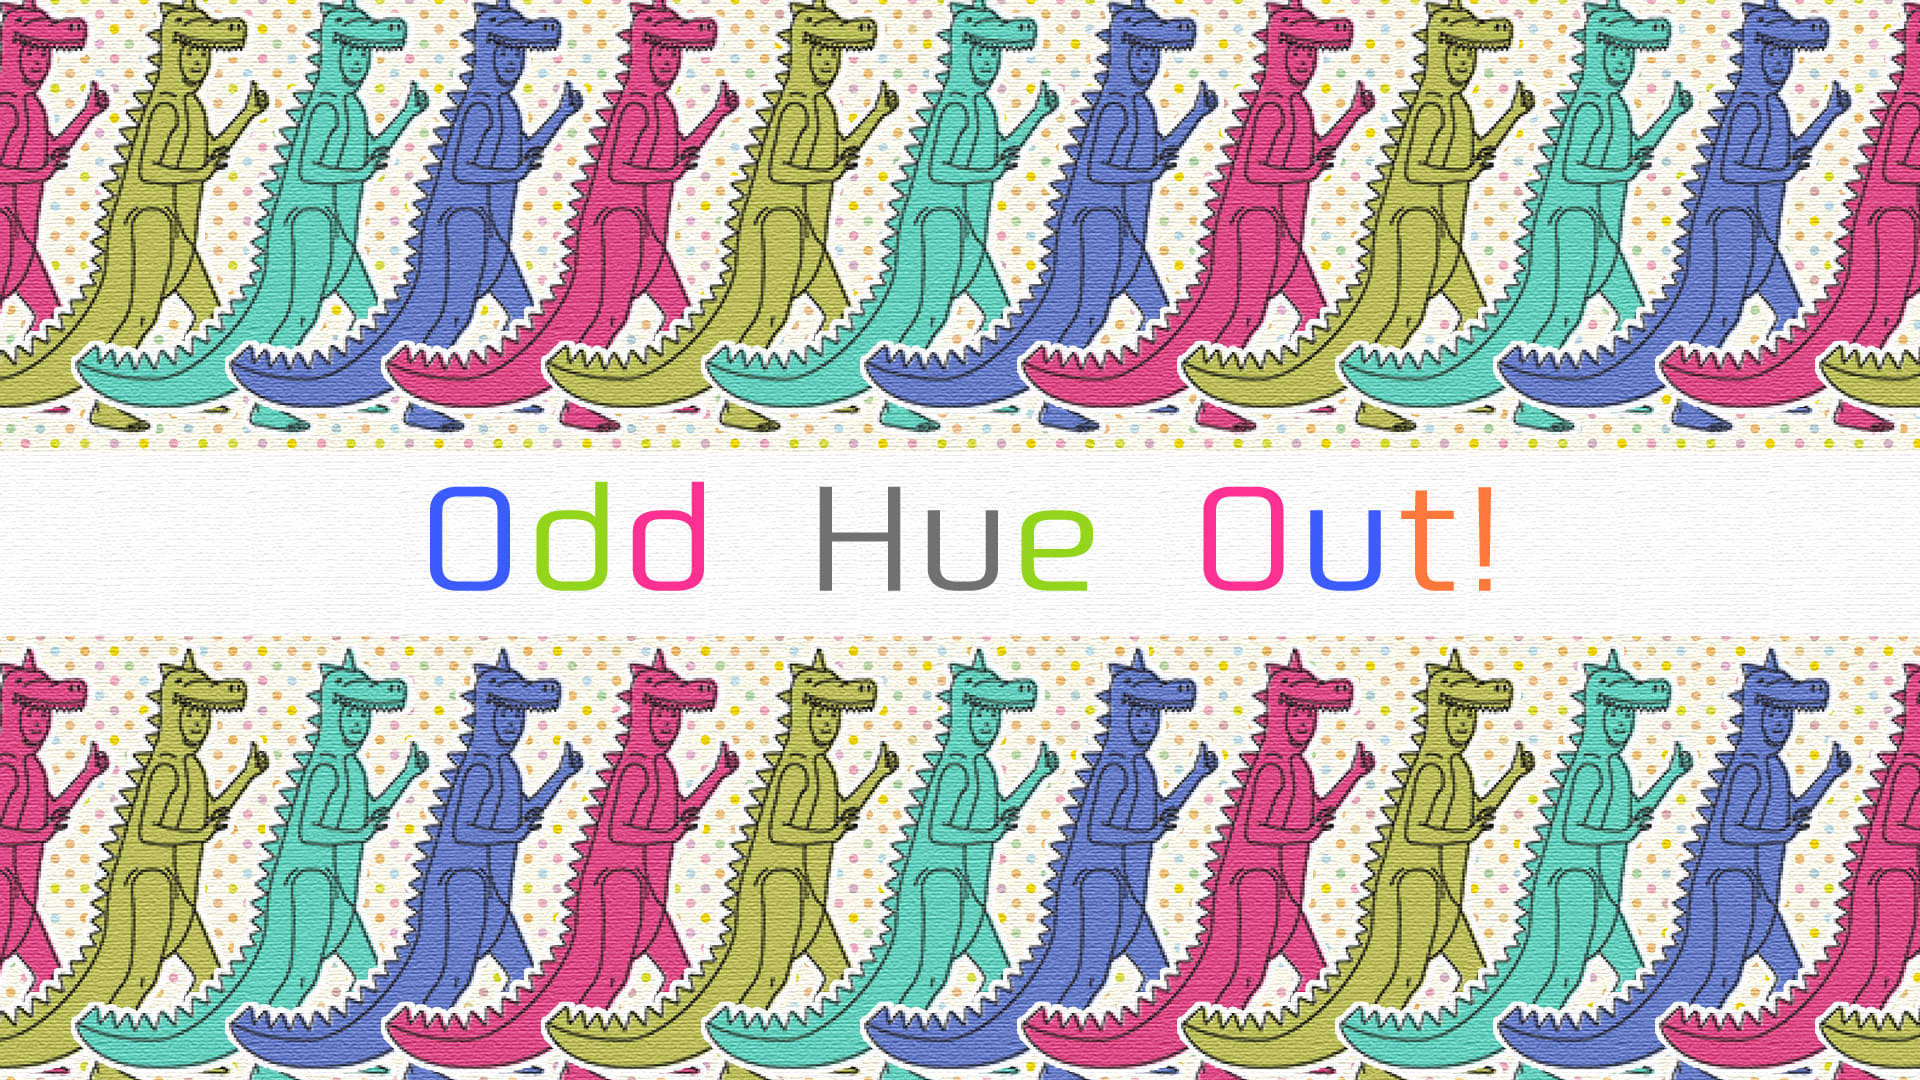 Odd Hue Out! 1